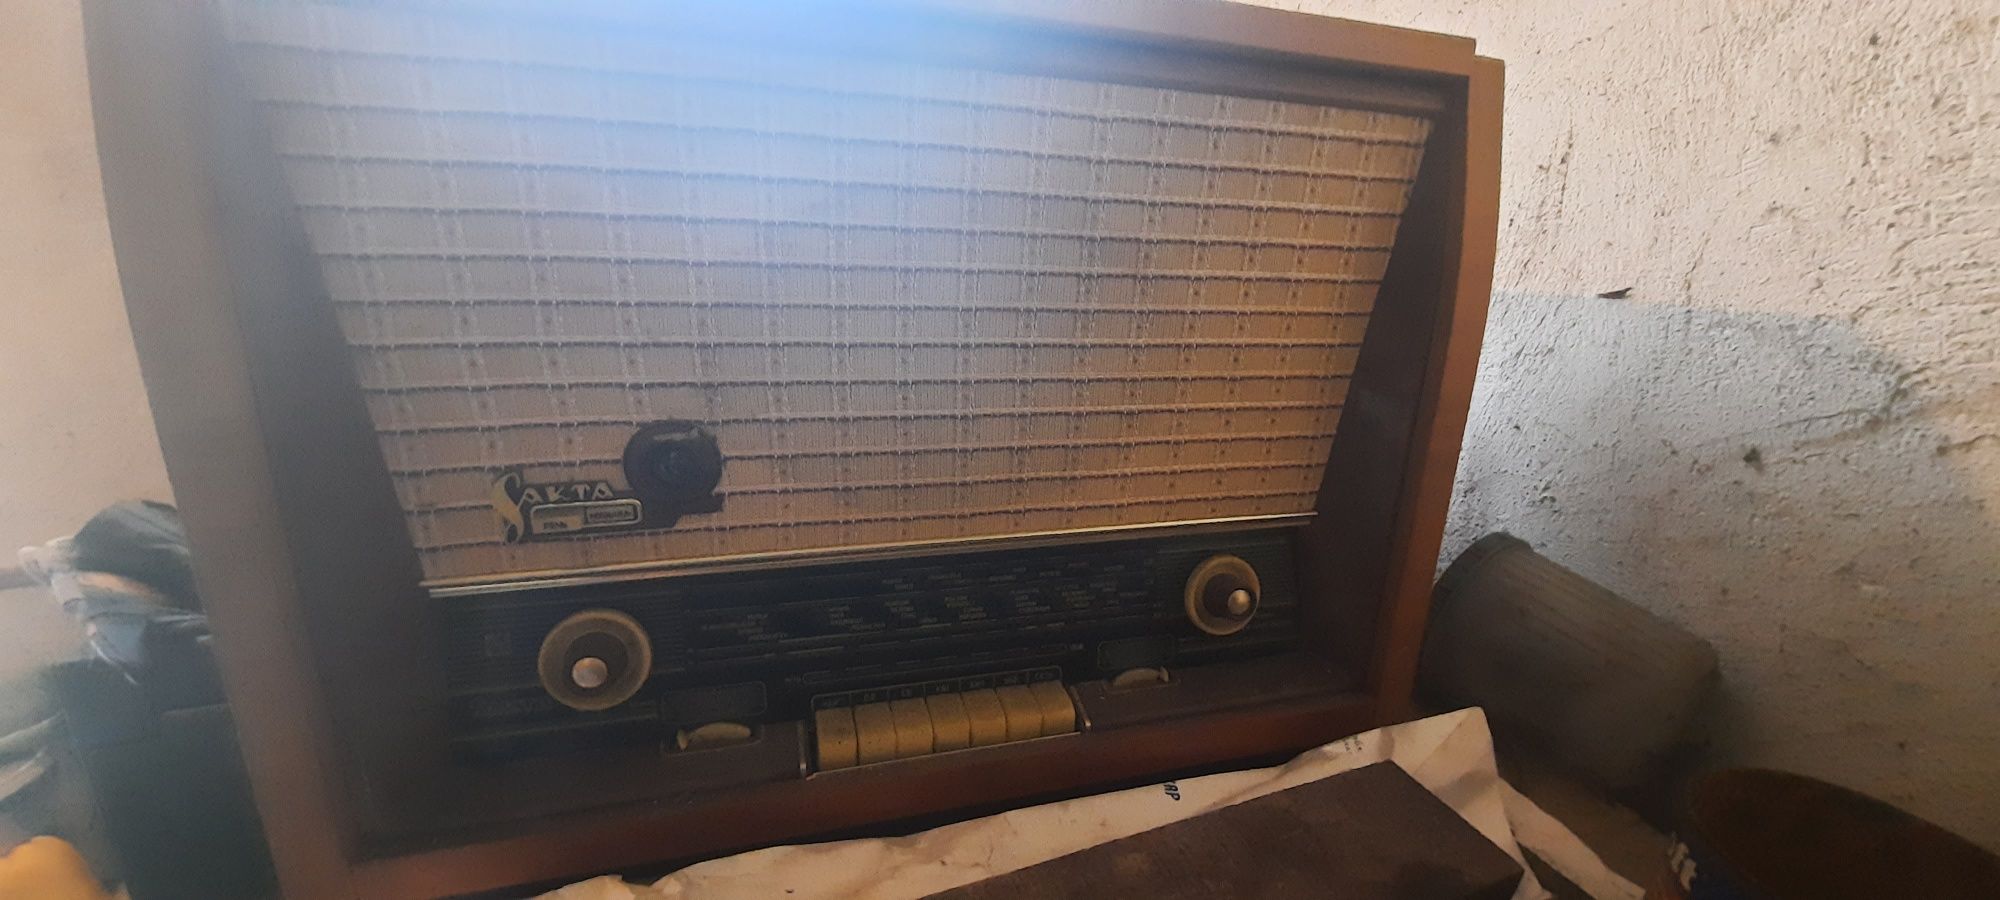 Лот  старинни неща радио  шевна машина   и  дървено корито